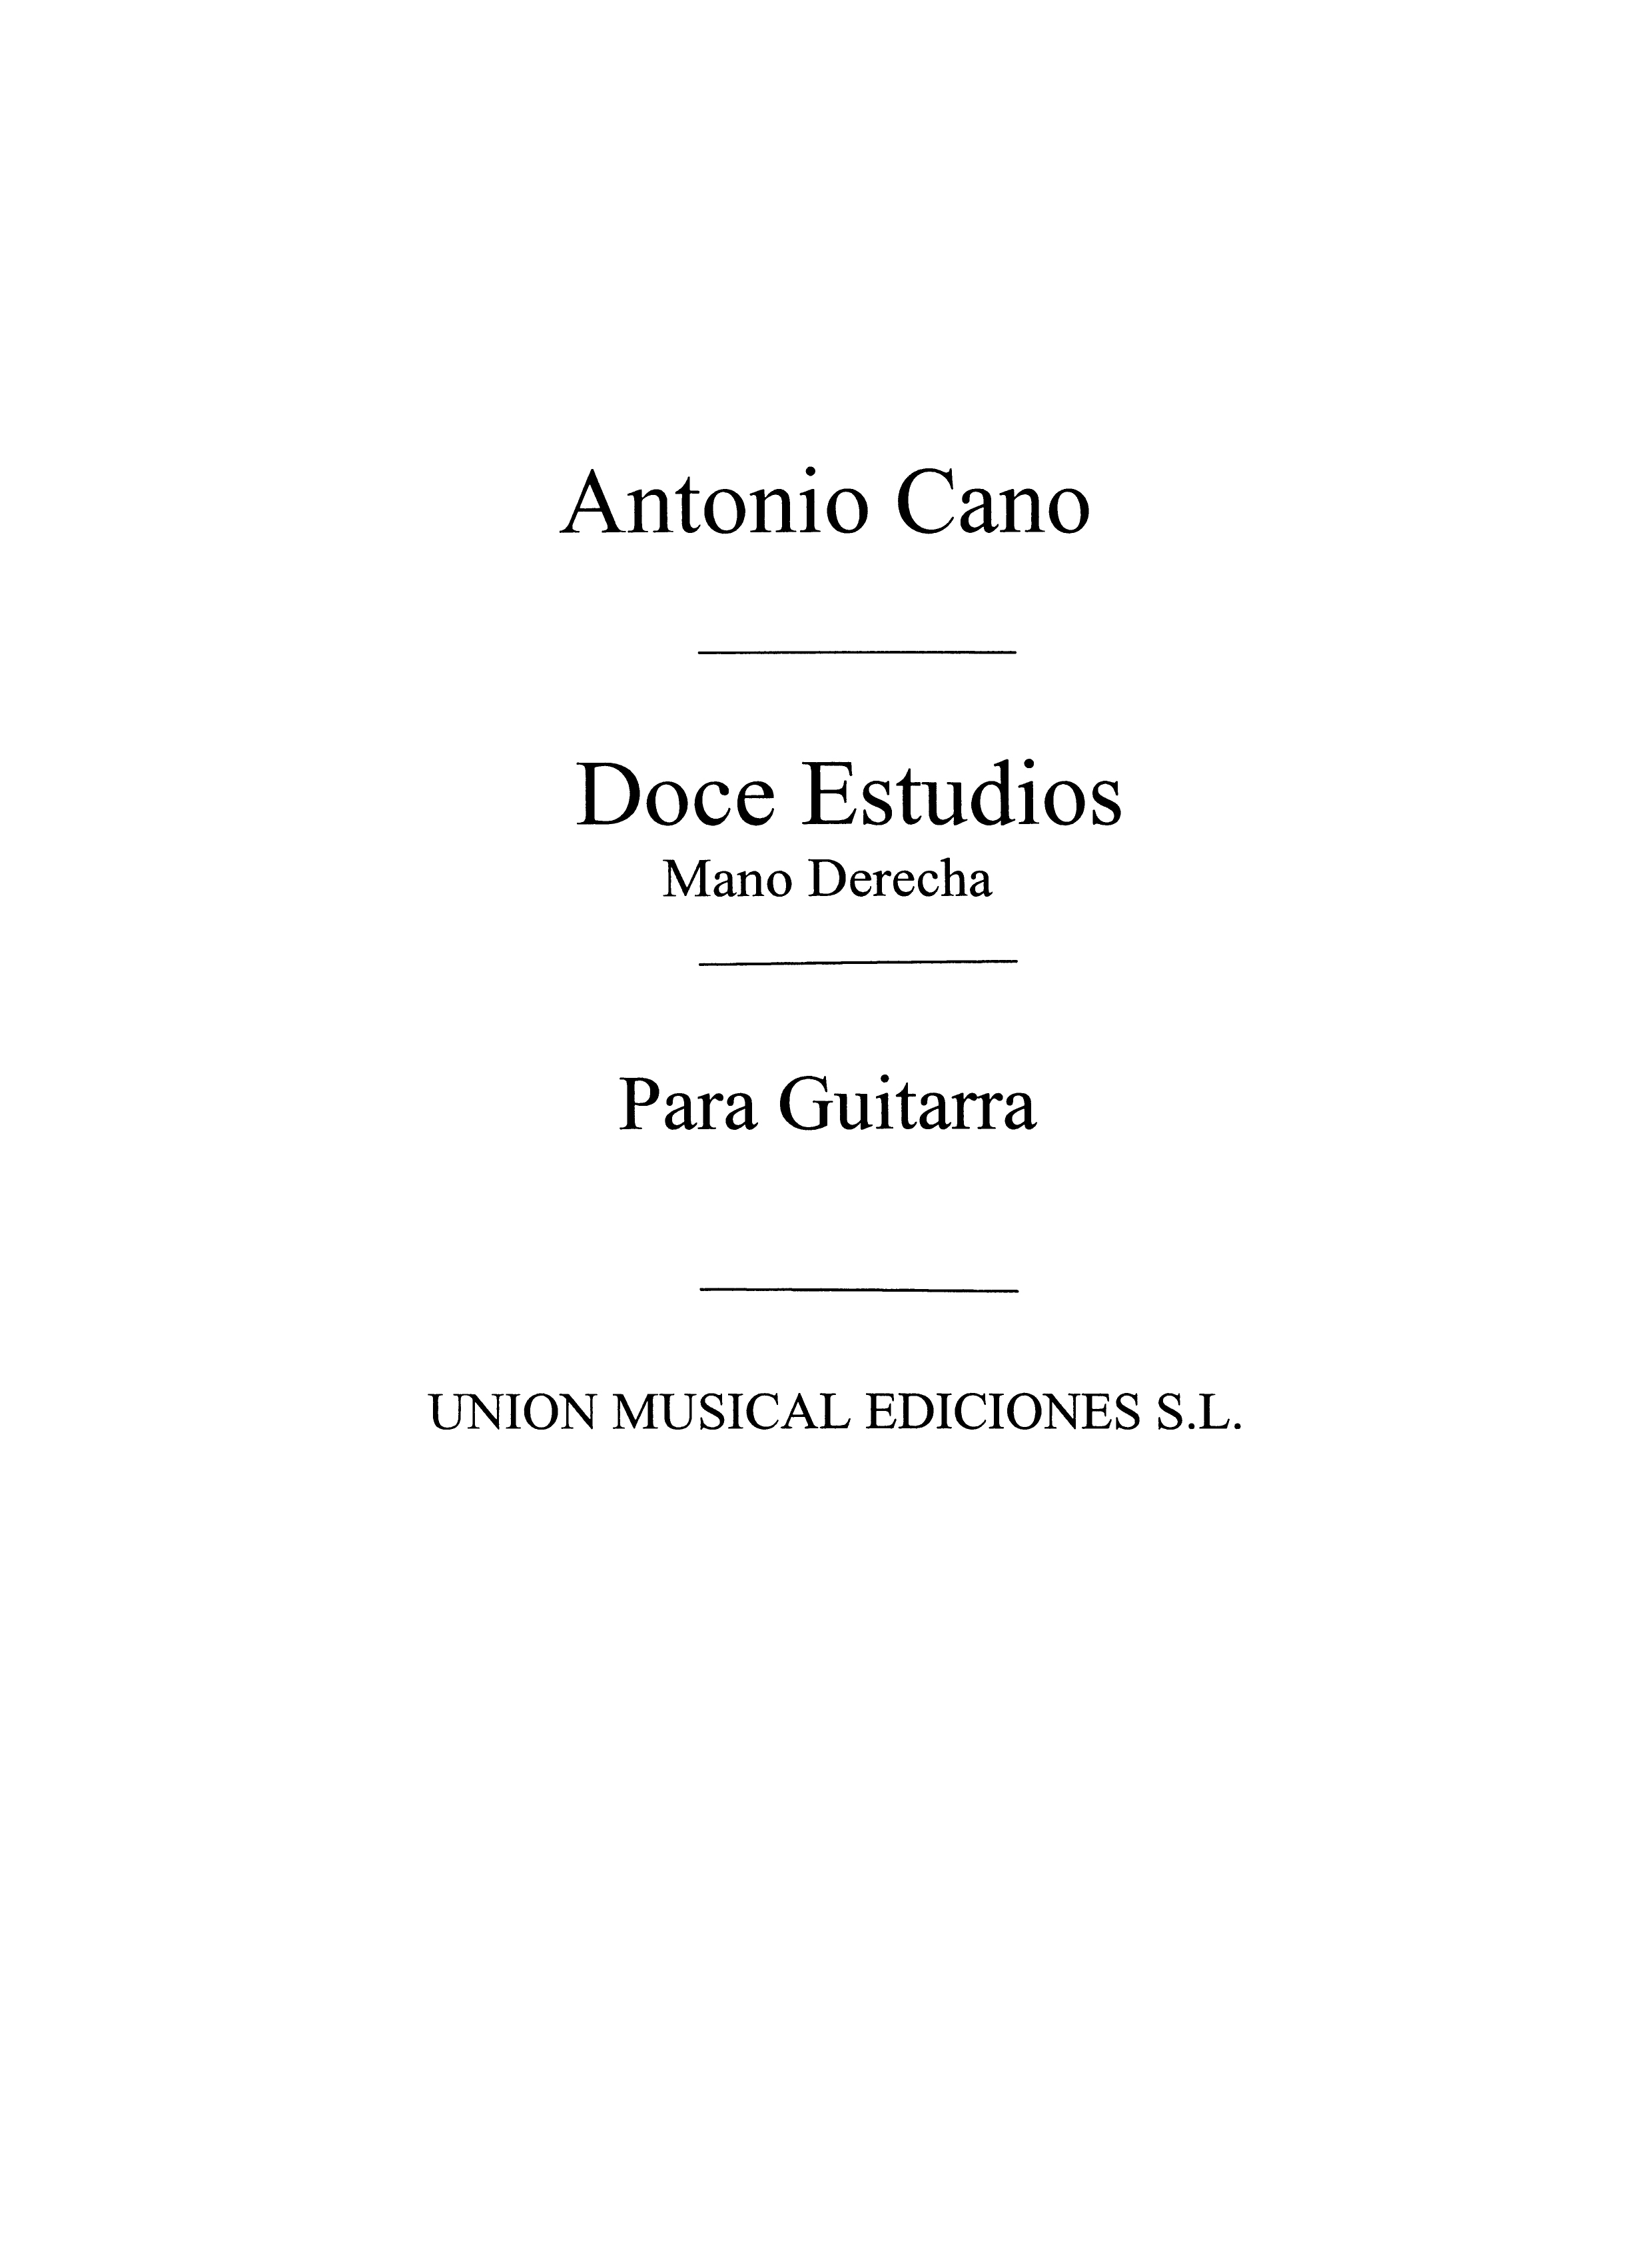 Cano: Doce Estudios para guitarra Mano Derecha (Balaguer) for Guitar